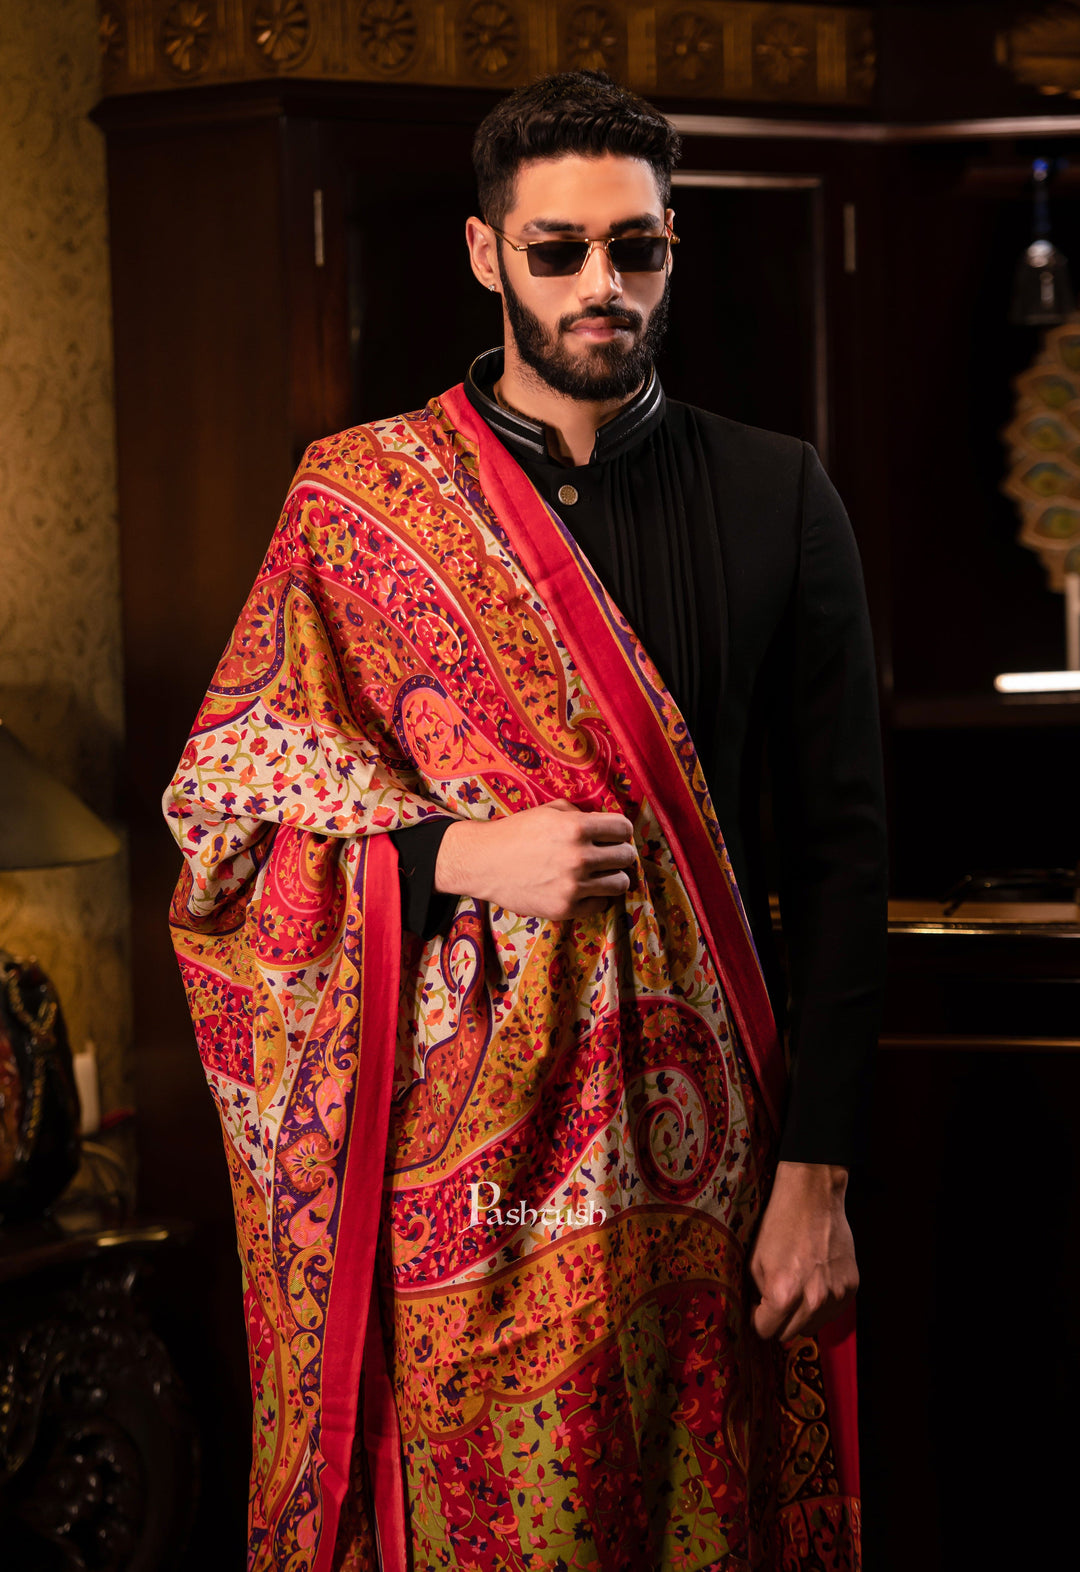 Pashtush India Mens Shawls Gents Shawl Pashtush men Fine Wool, Printed Paisley design, Multicolour